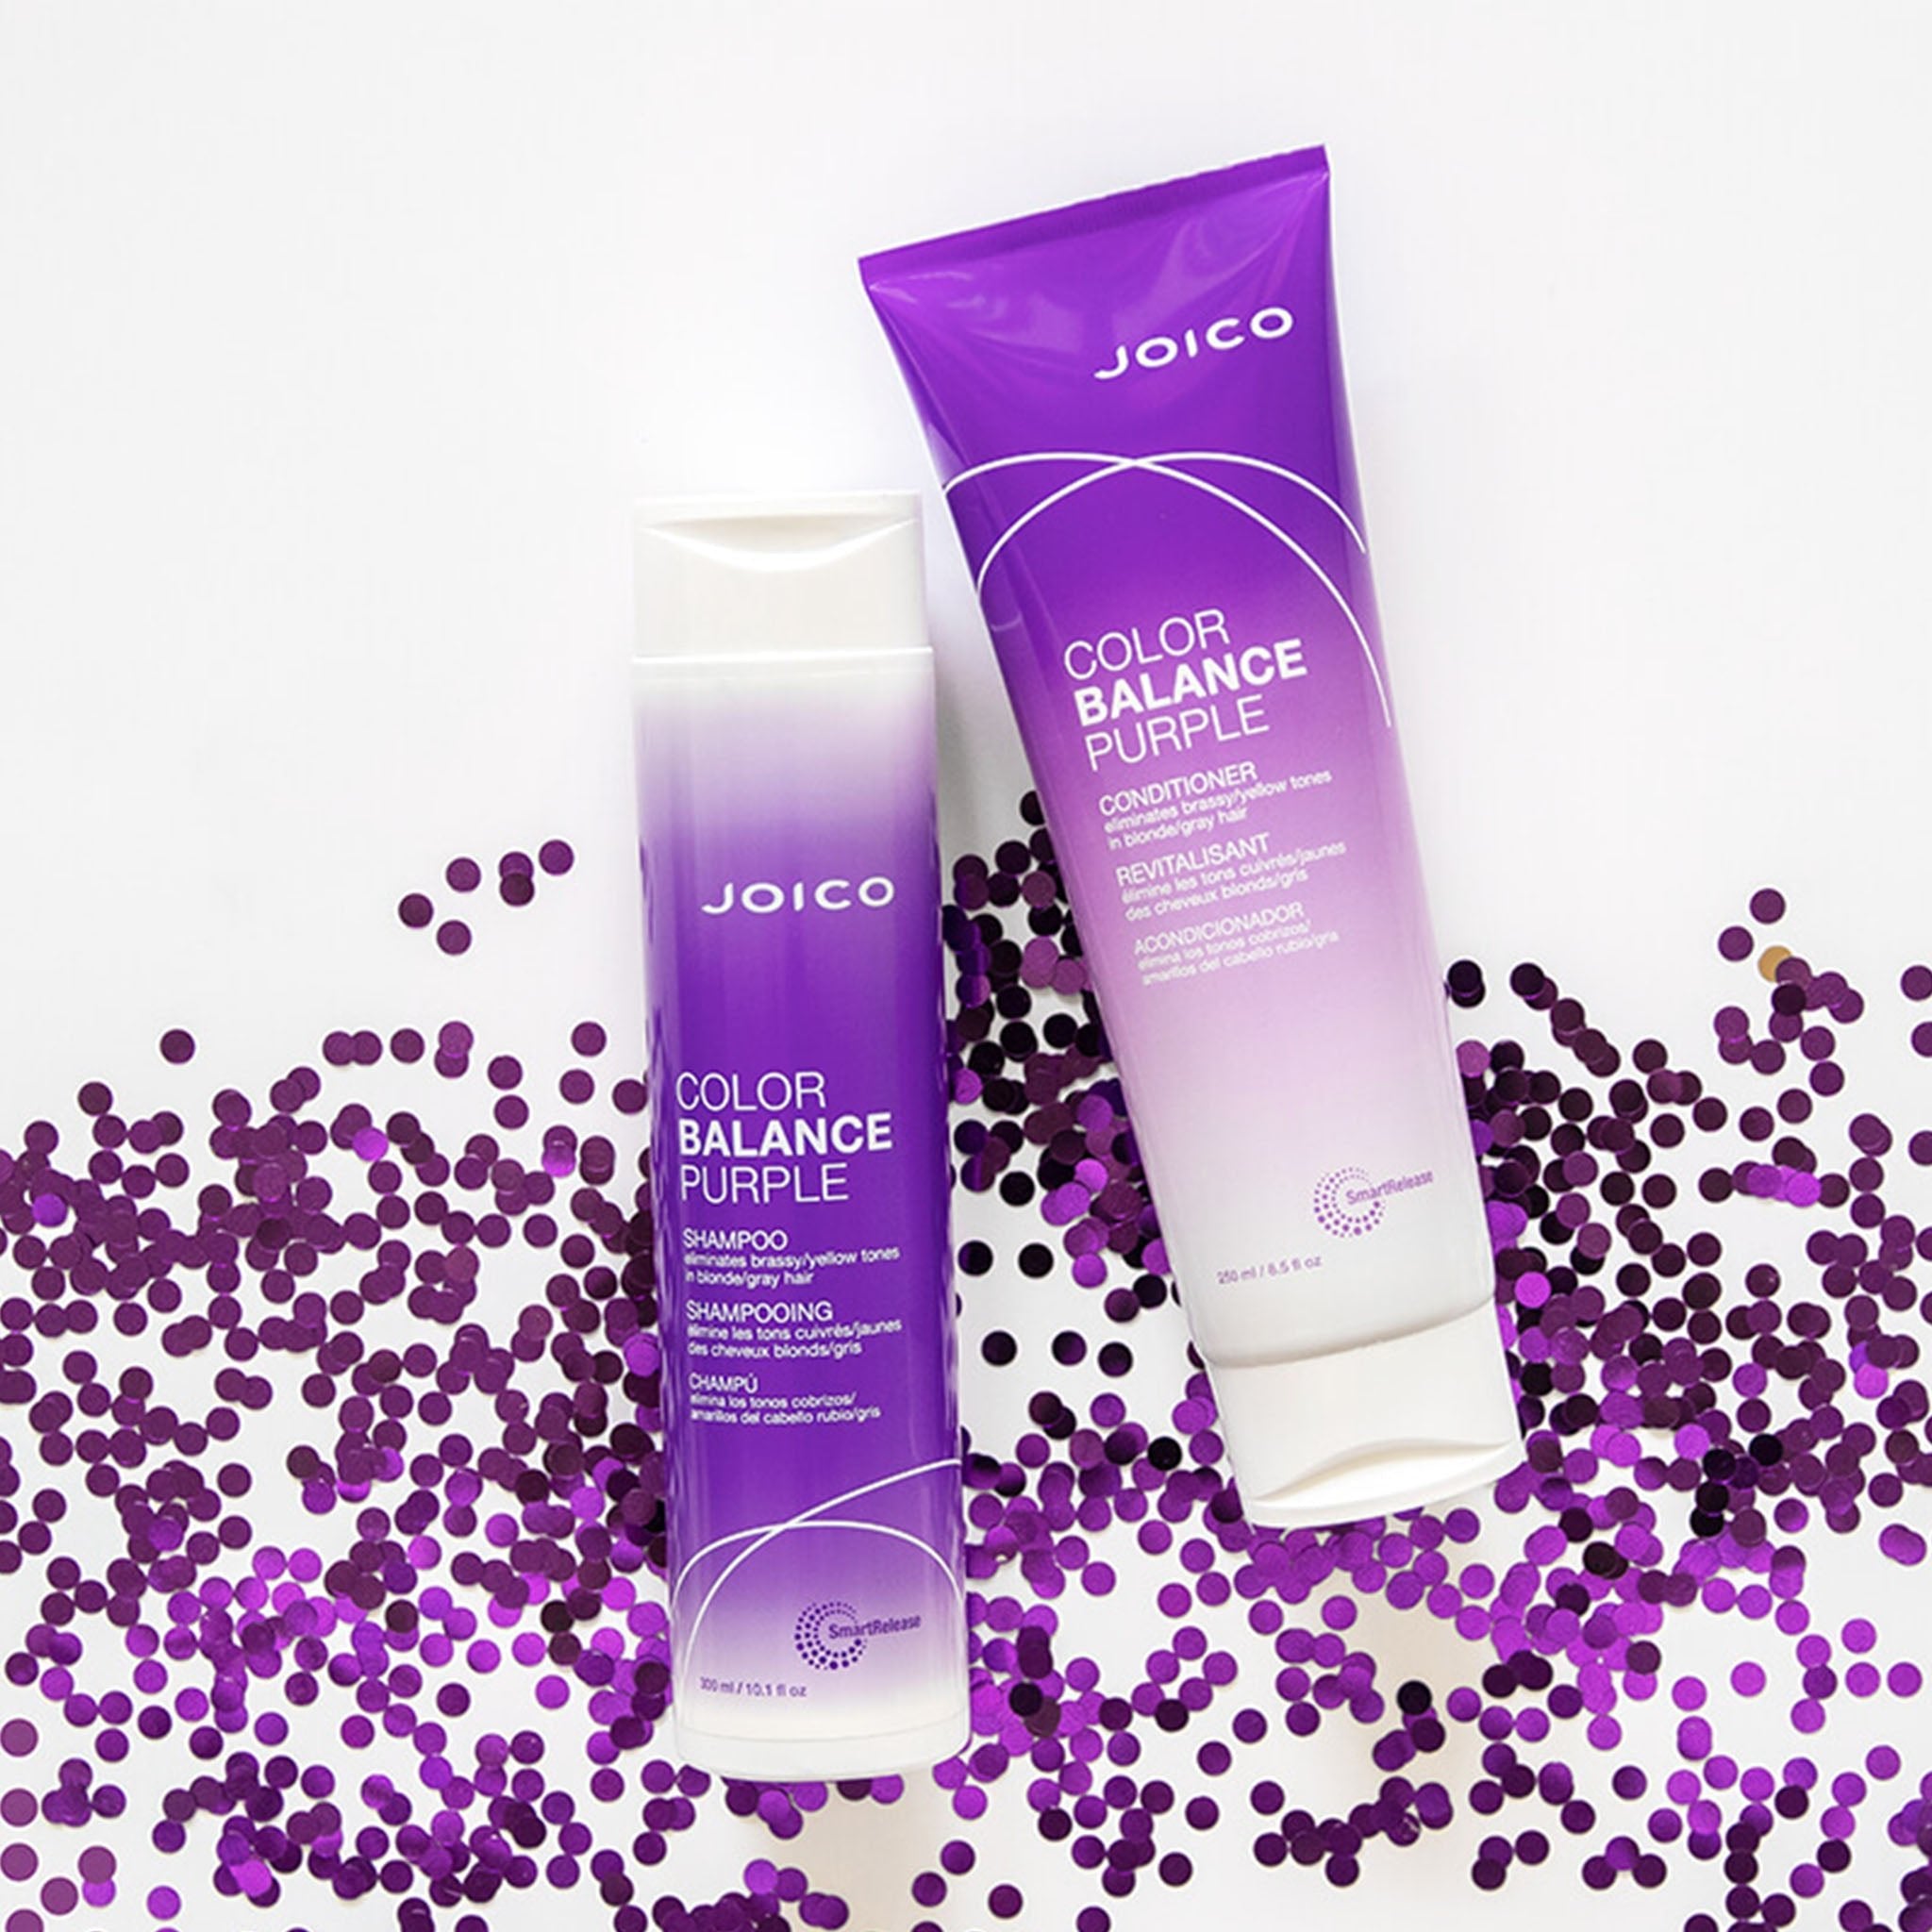 Joico. Shampoing Color Balance Purple - 50 ml - Concept C. Shop